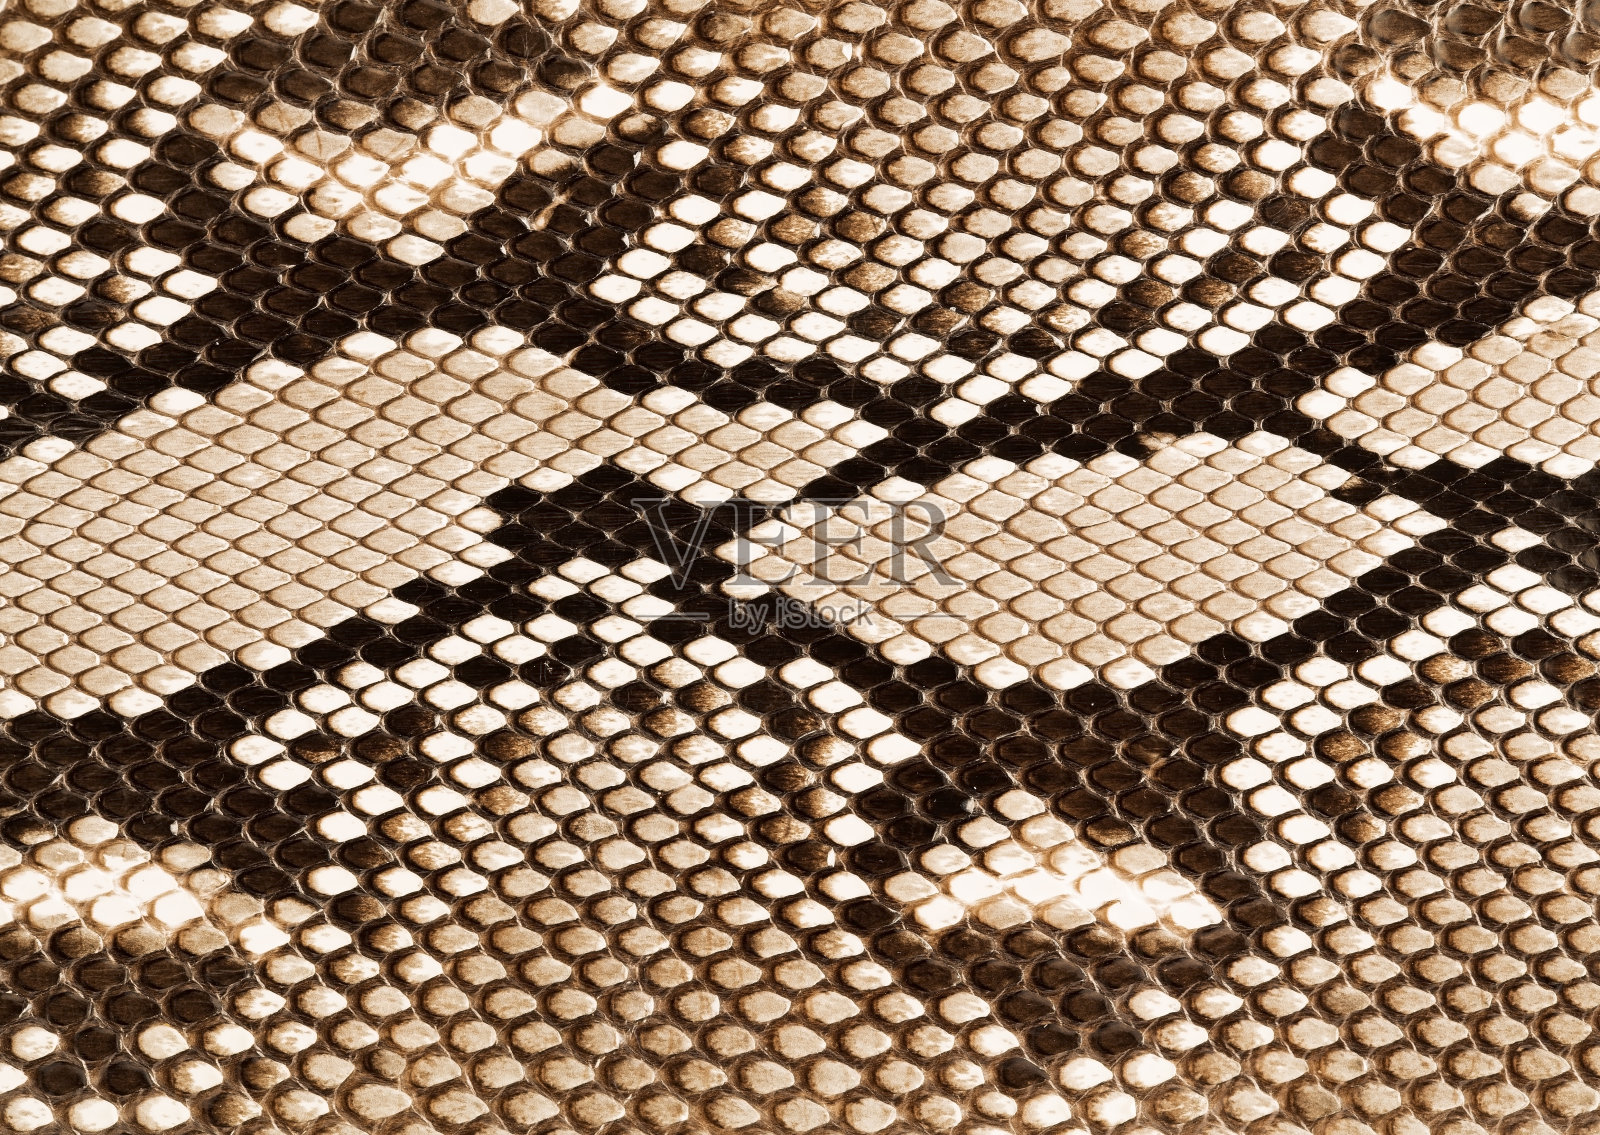 蛇的身体表面的鳞片紧密排列动物素材设计